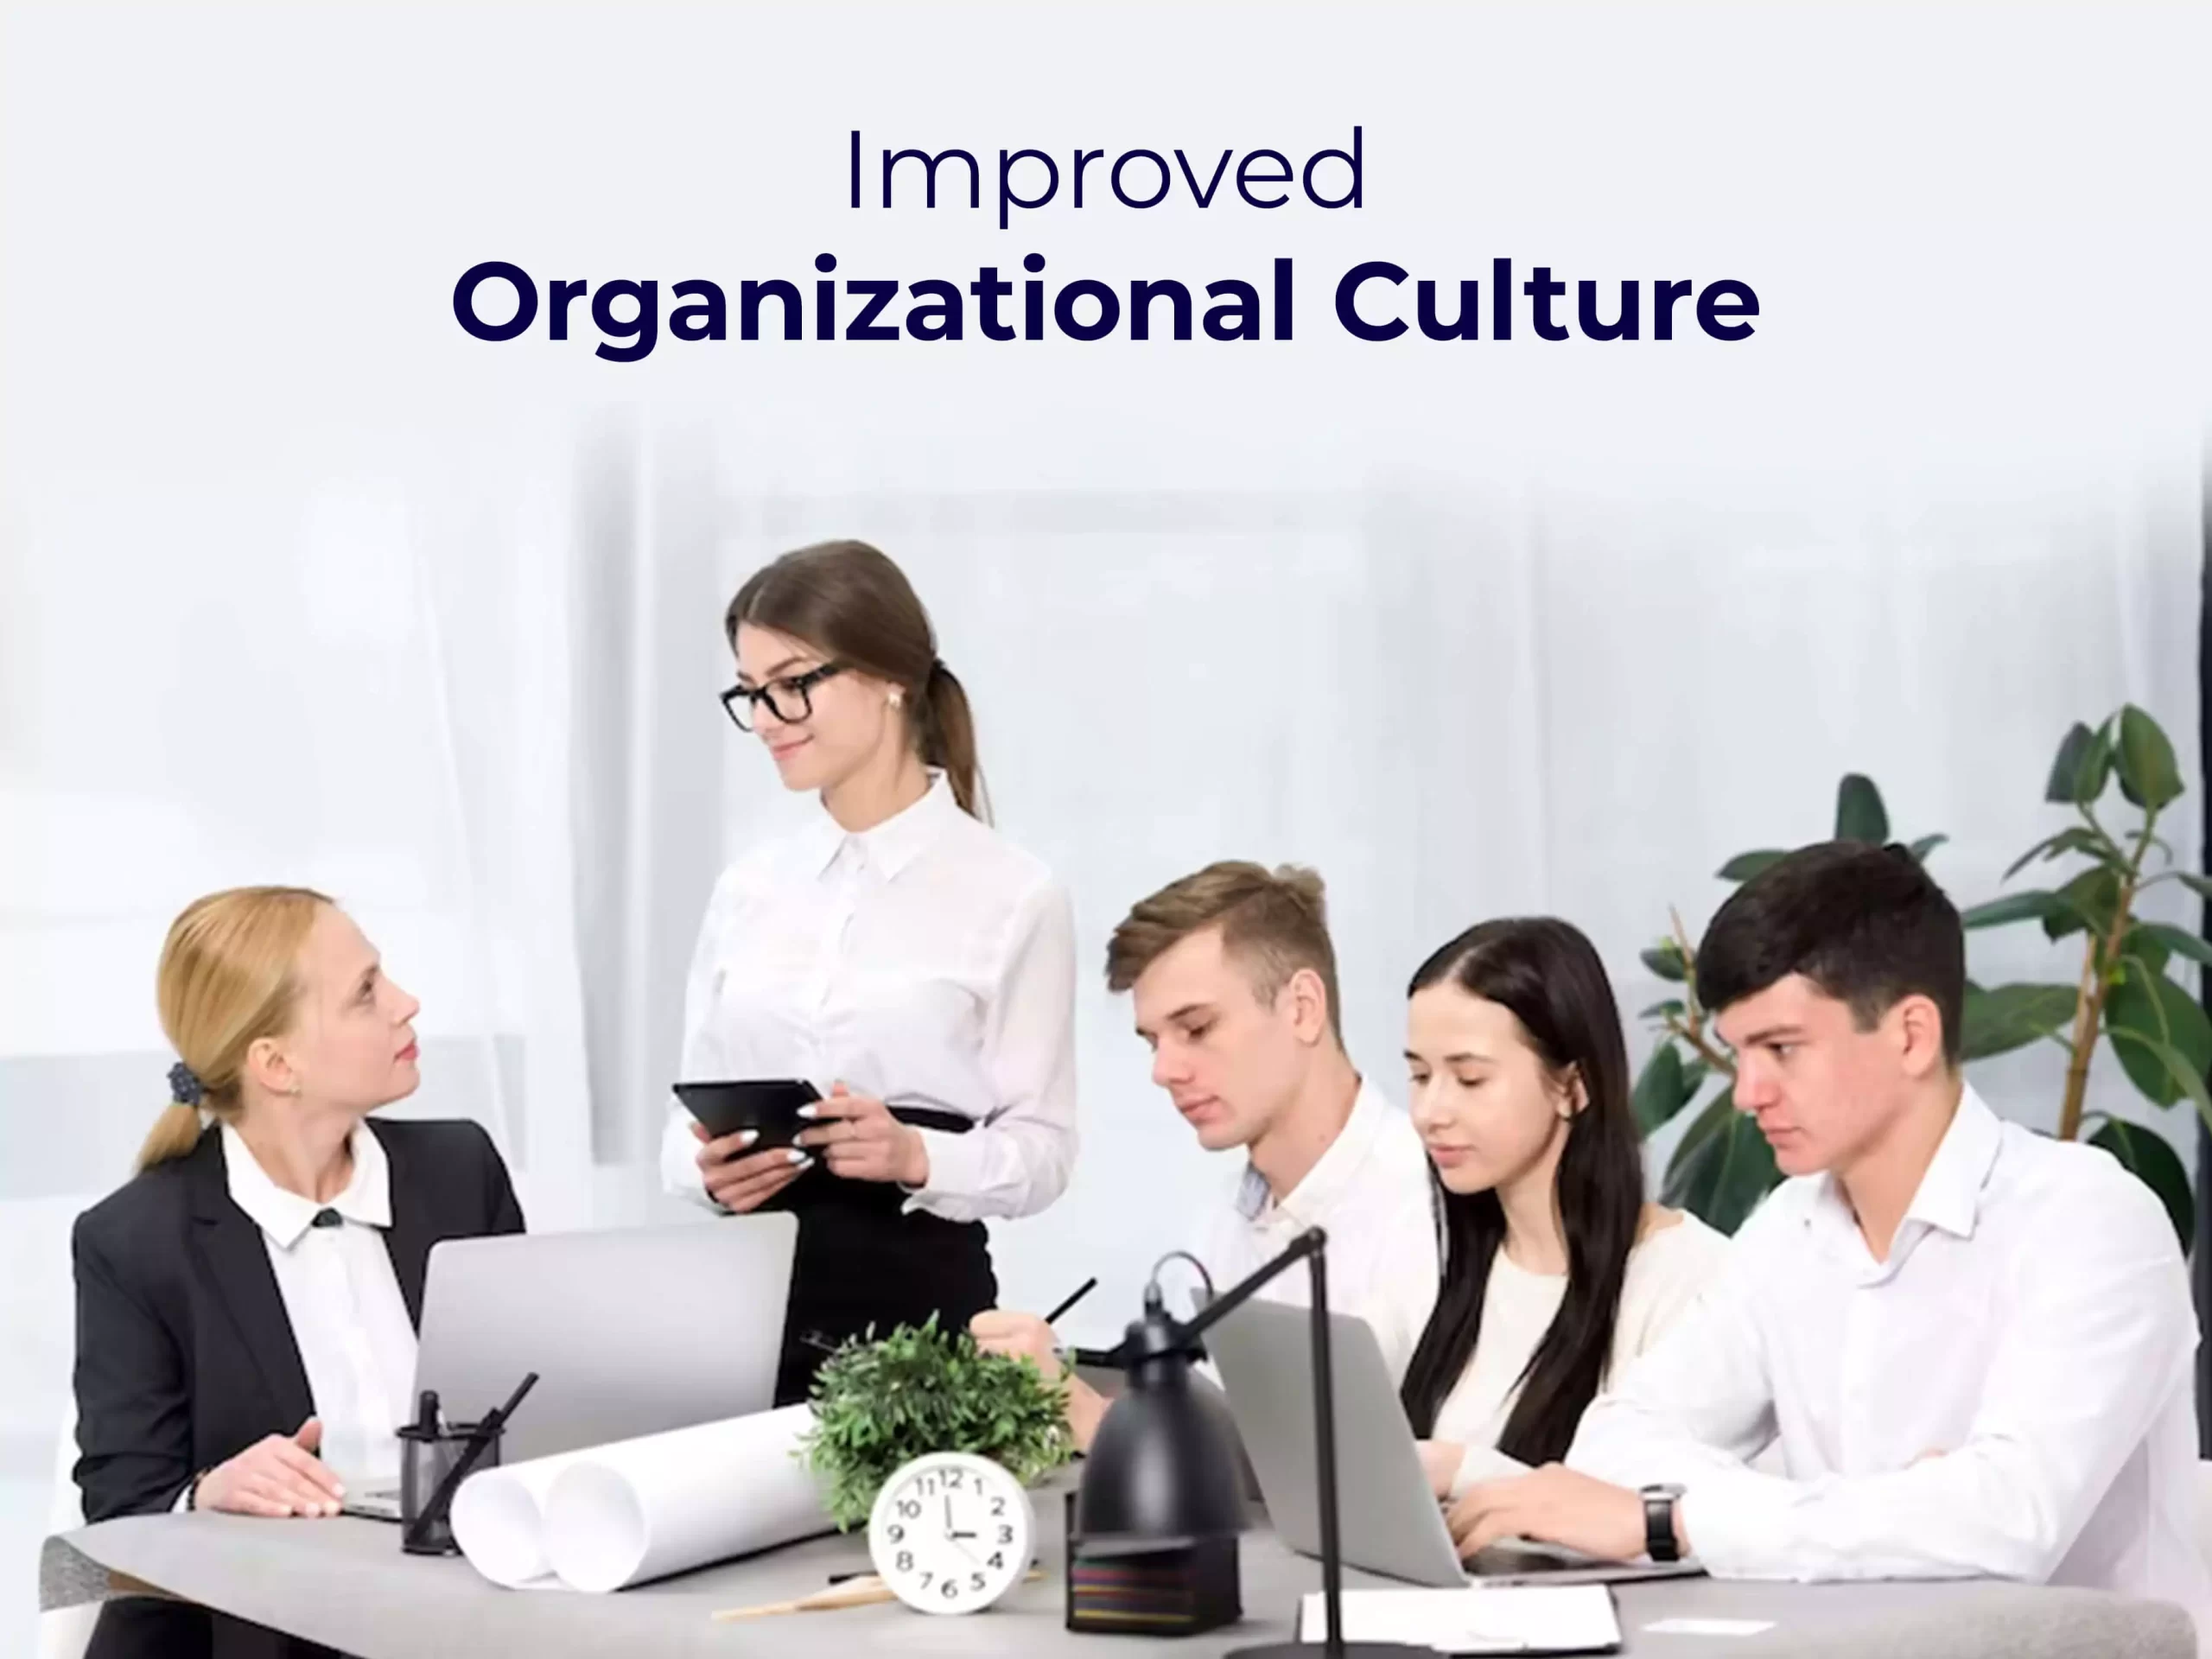 Improved organizational culture